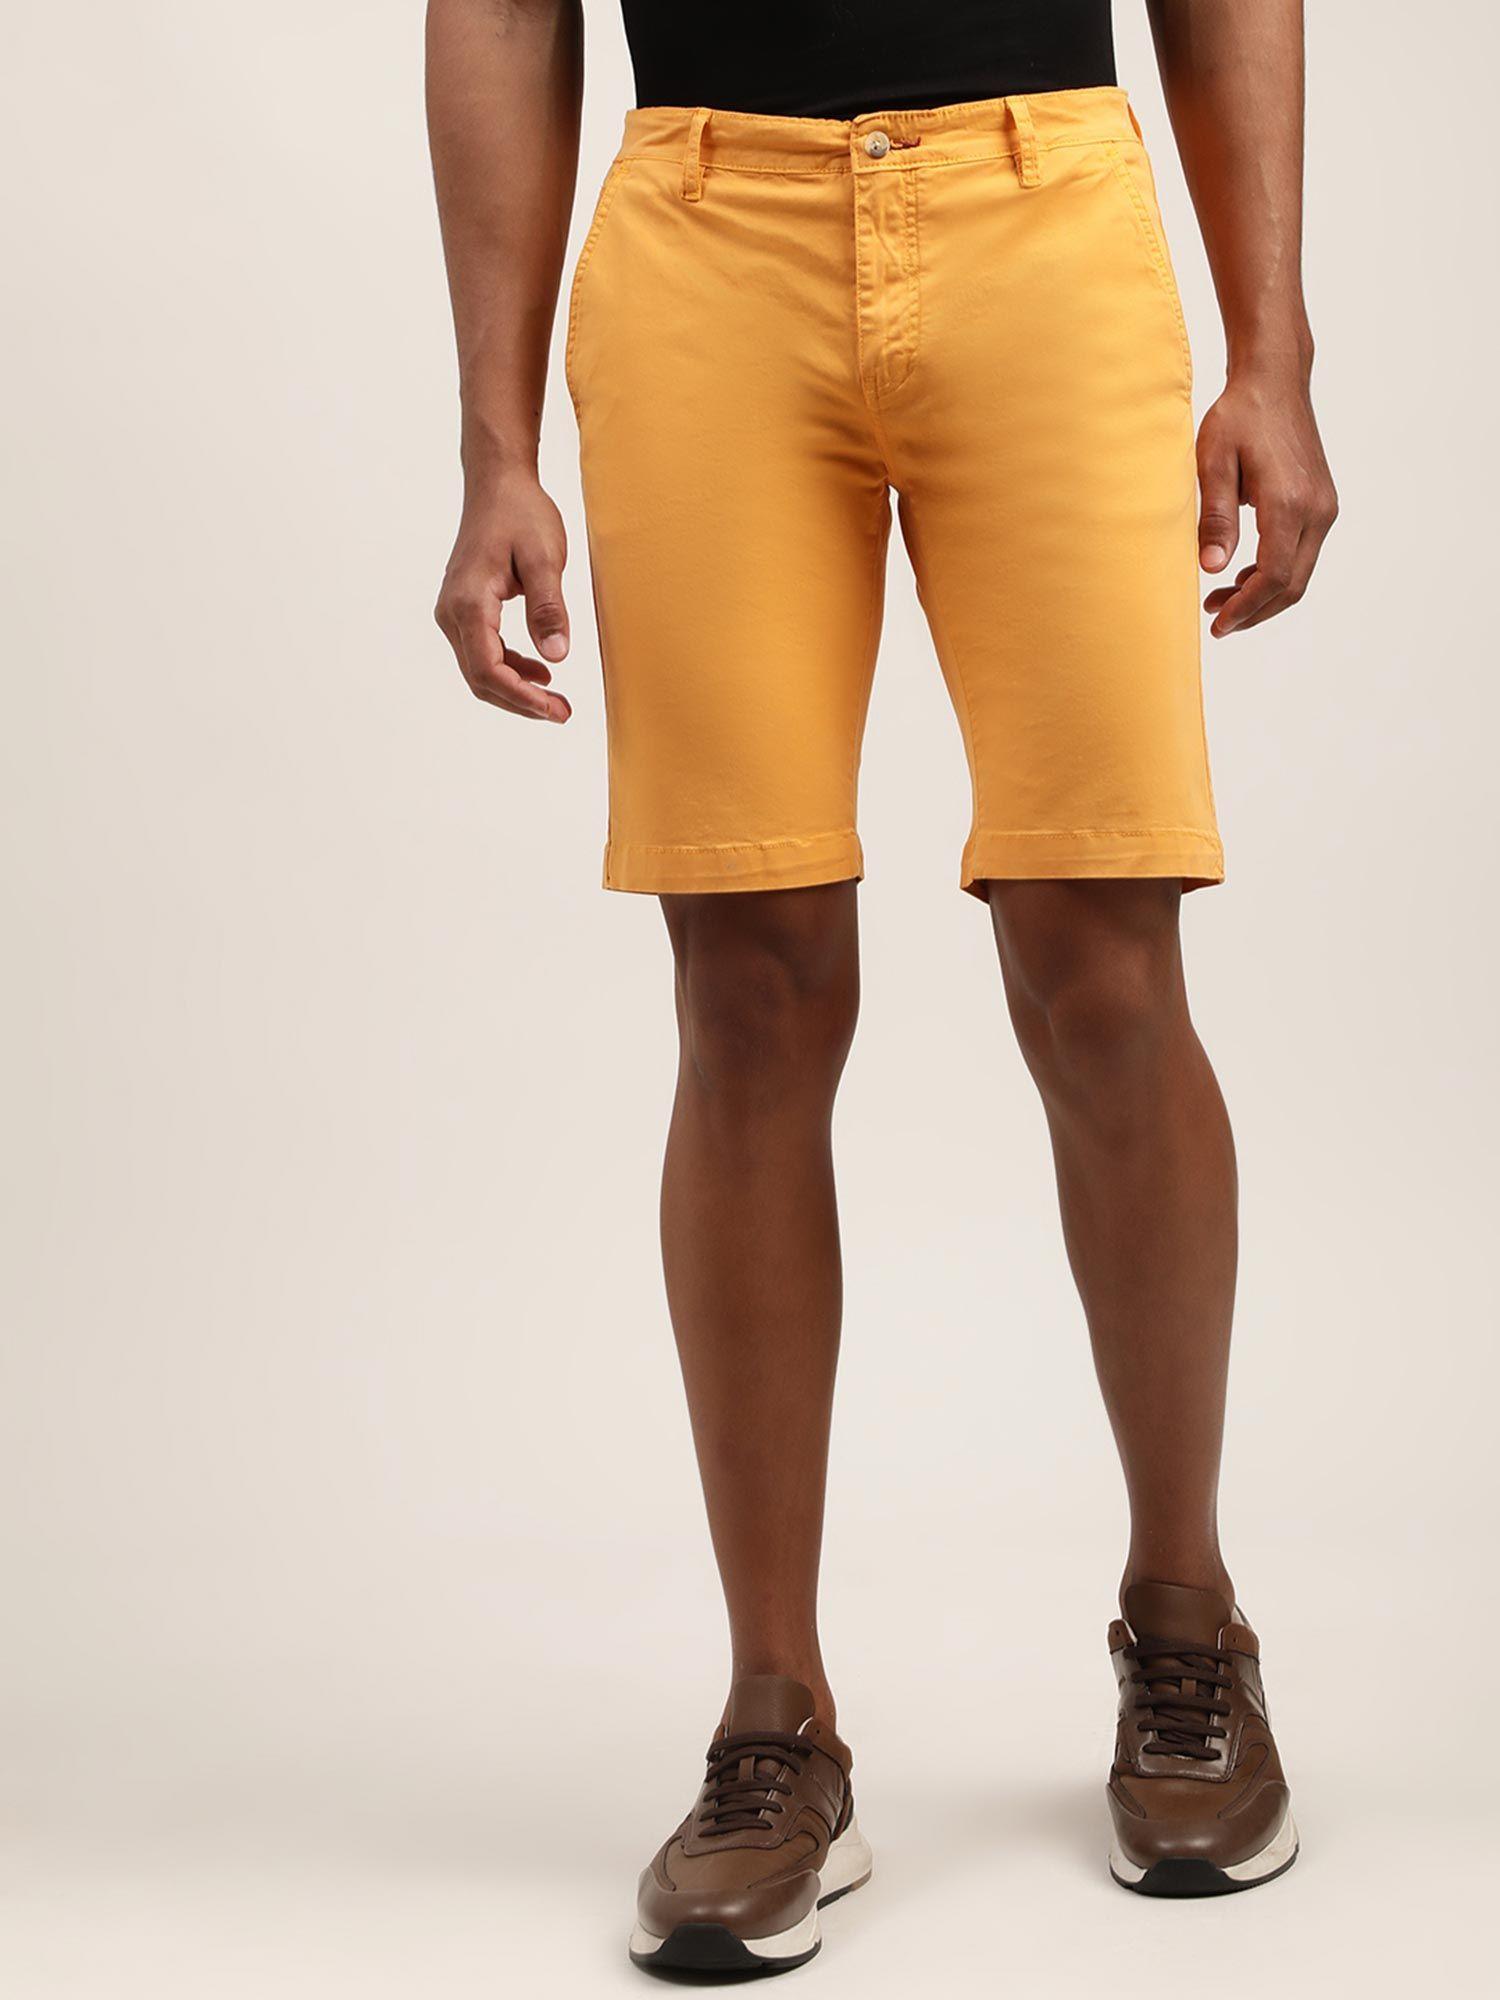 mens-solid-mustard-regular-shorts